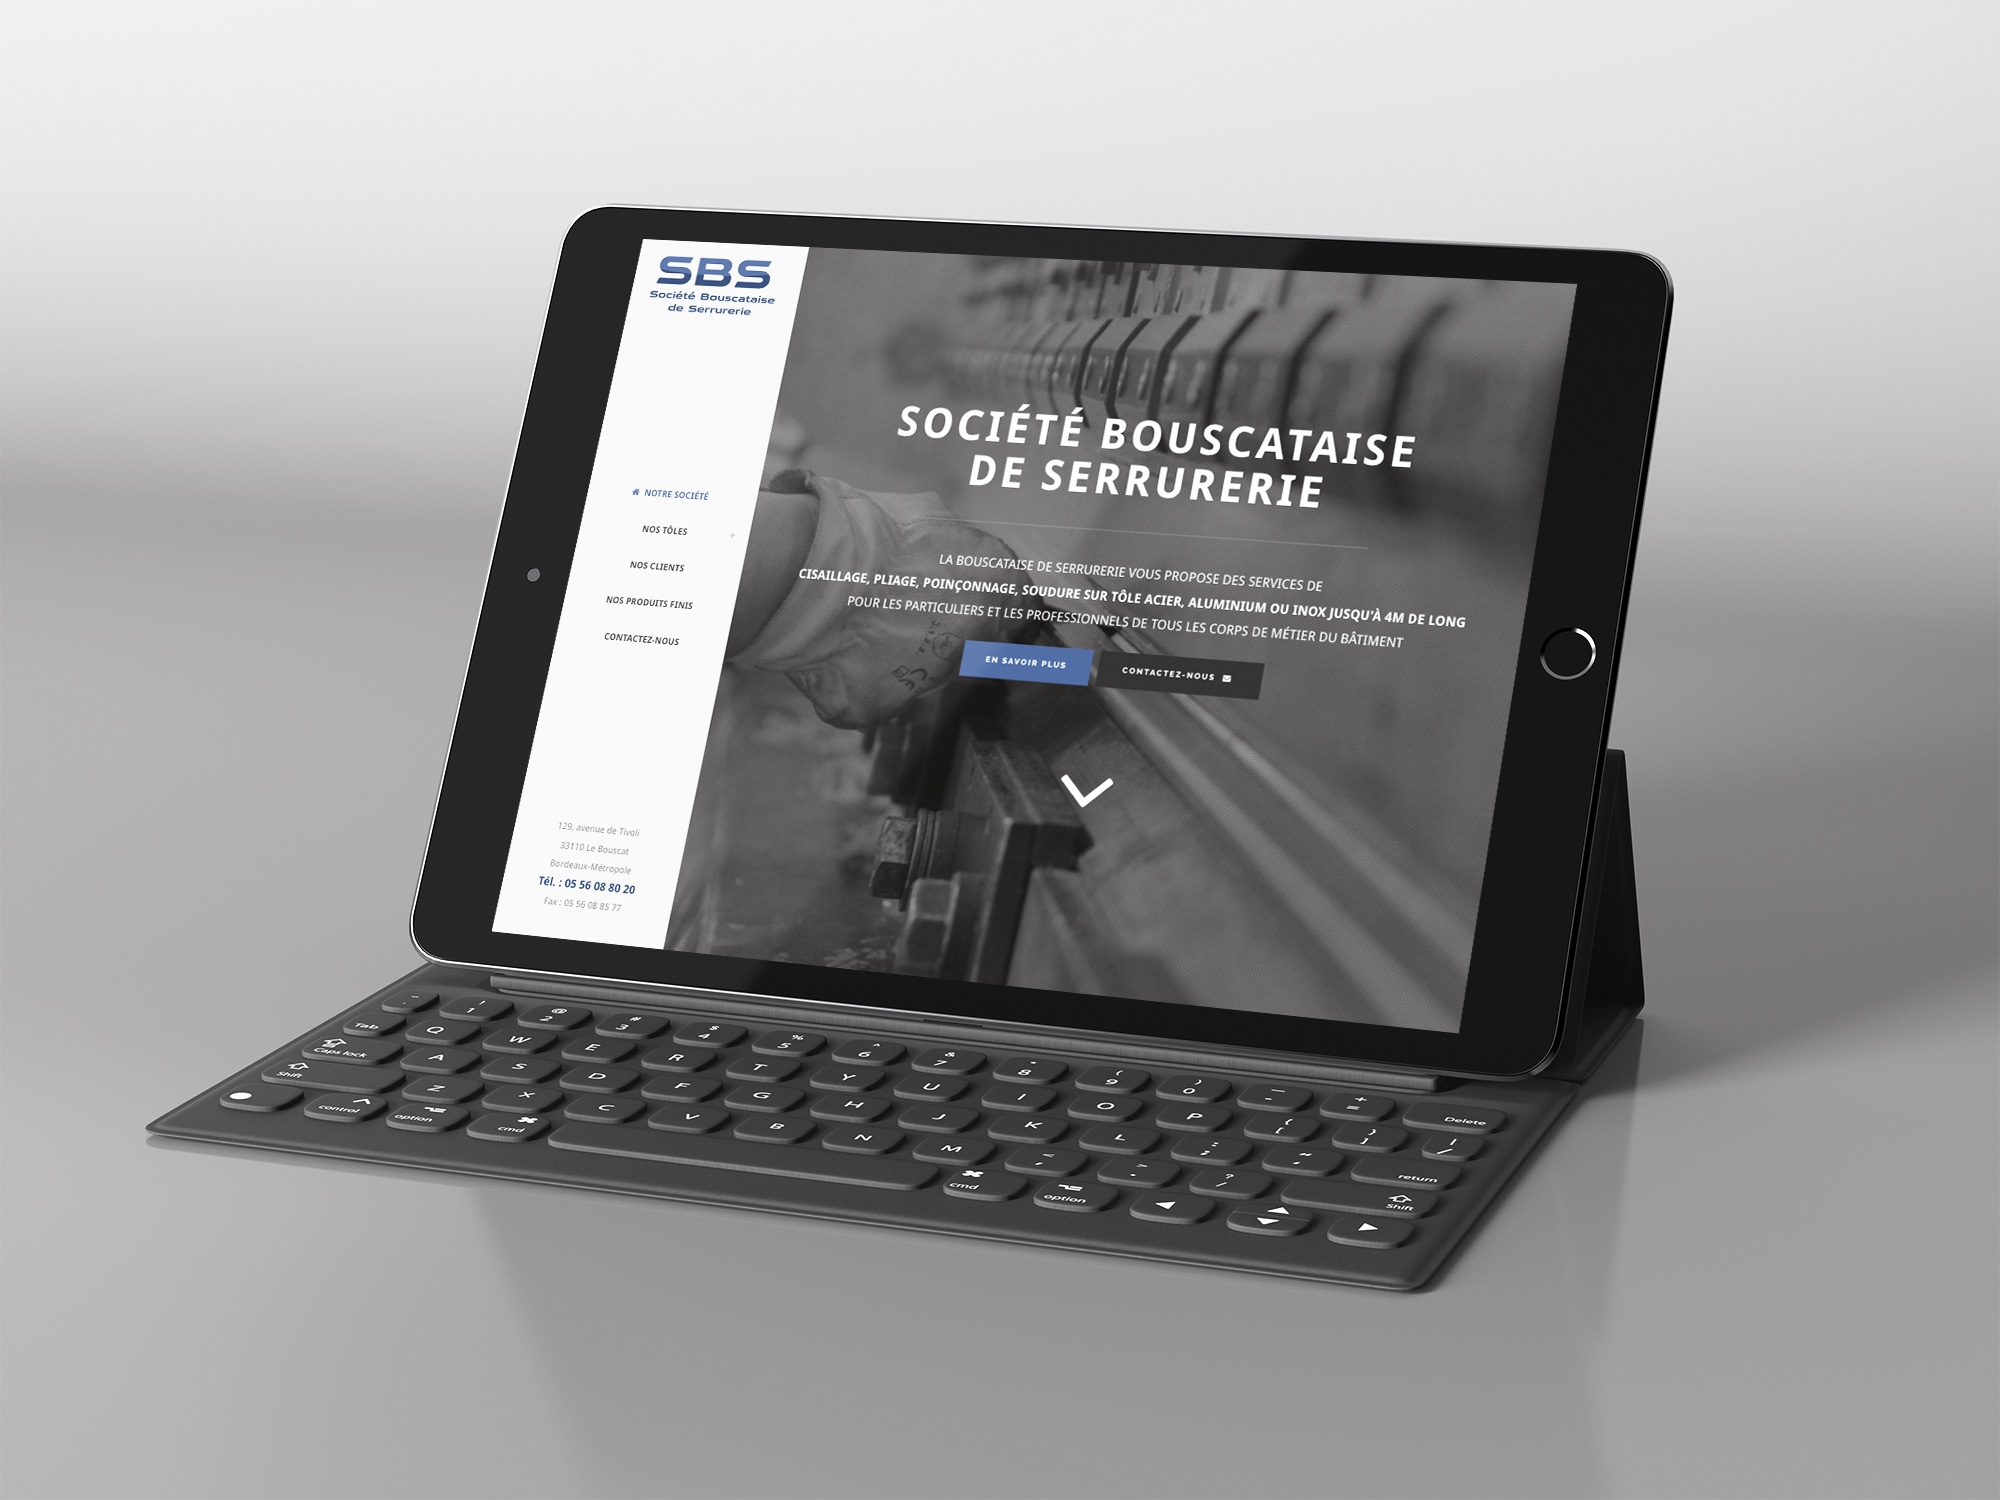 Bouscataise serrurerie site internet responsive tablette2 mobile bordeaux 2000x1500